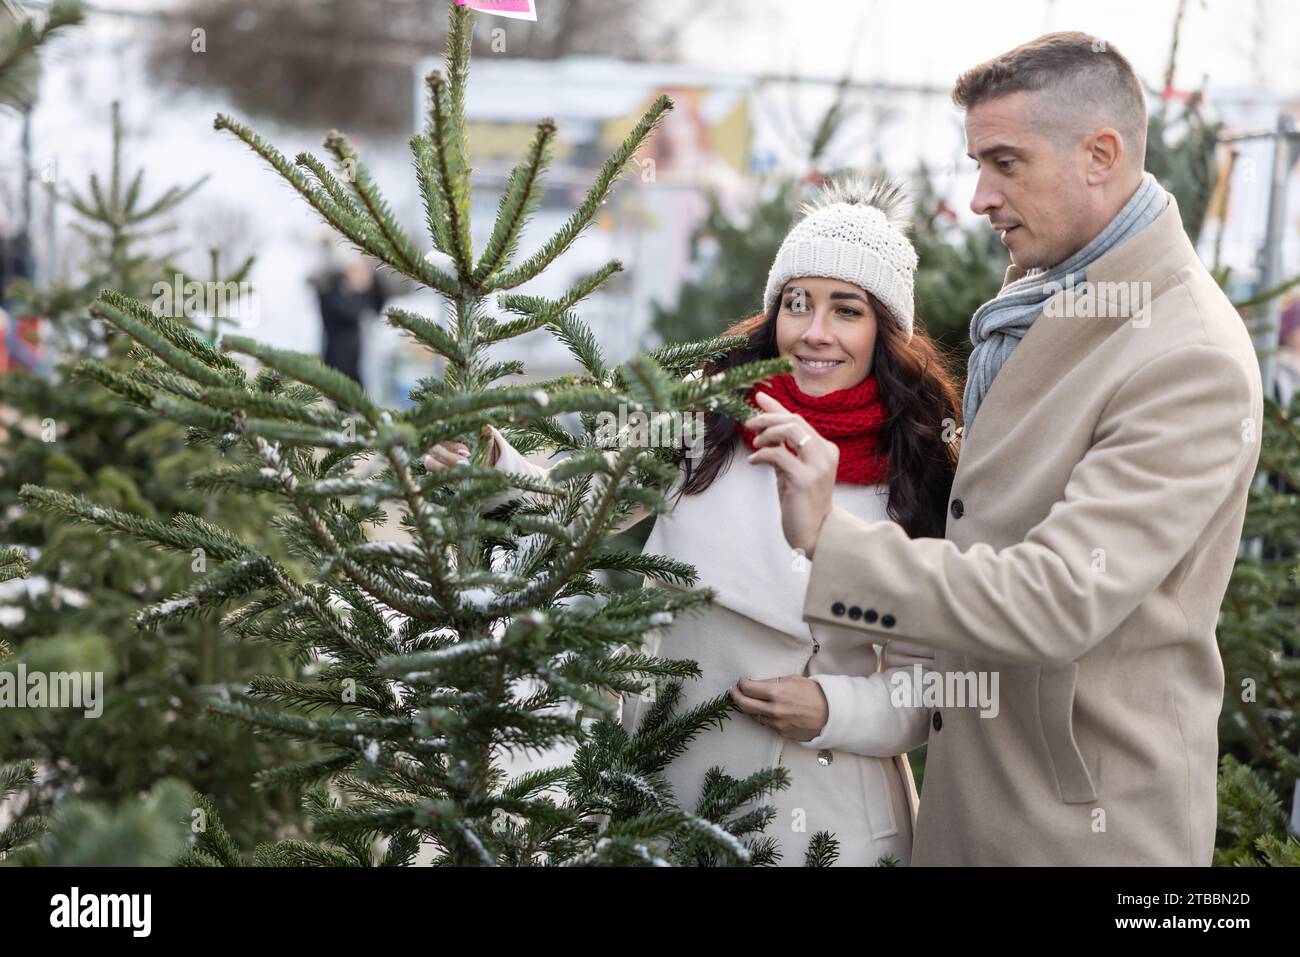 Un couple heureux achète un sapin de Noël au marché, importé des pays nordiques. Un couple choisit un arbre dans une ferme d'arbres de Noël. Banque D'Images